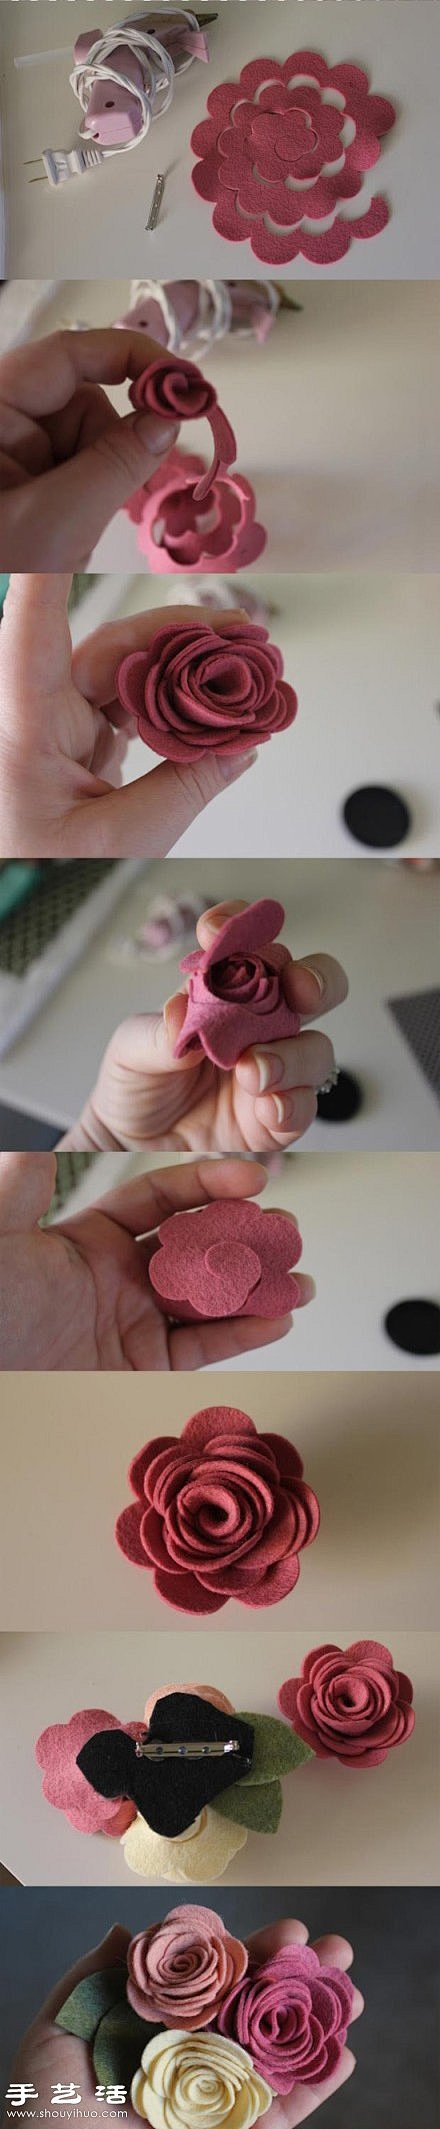 毛毡布 夹子 手工制作漂亮胸花的方法